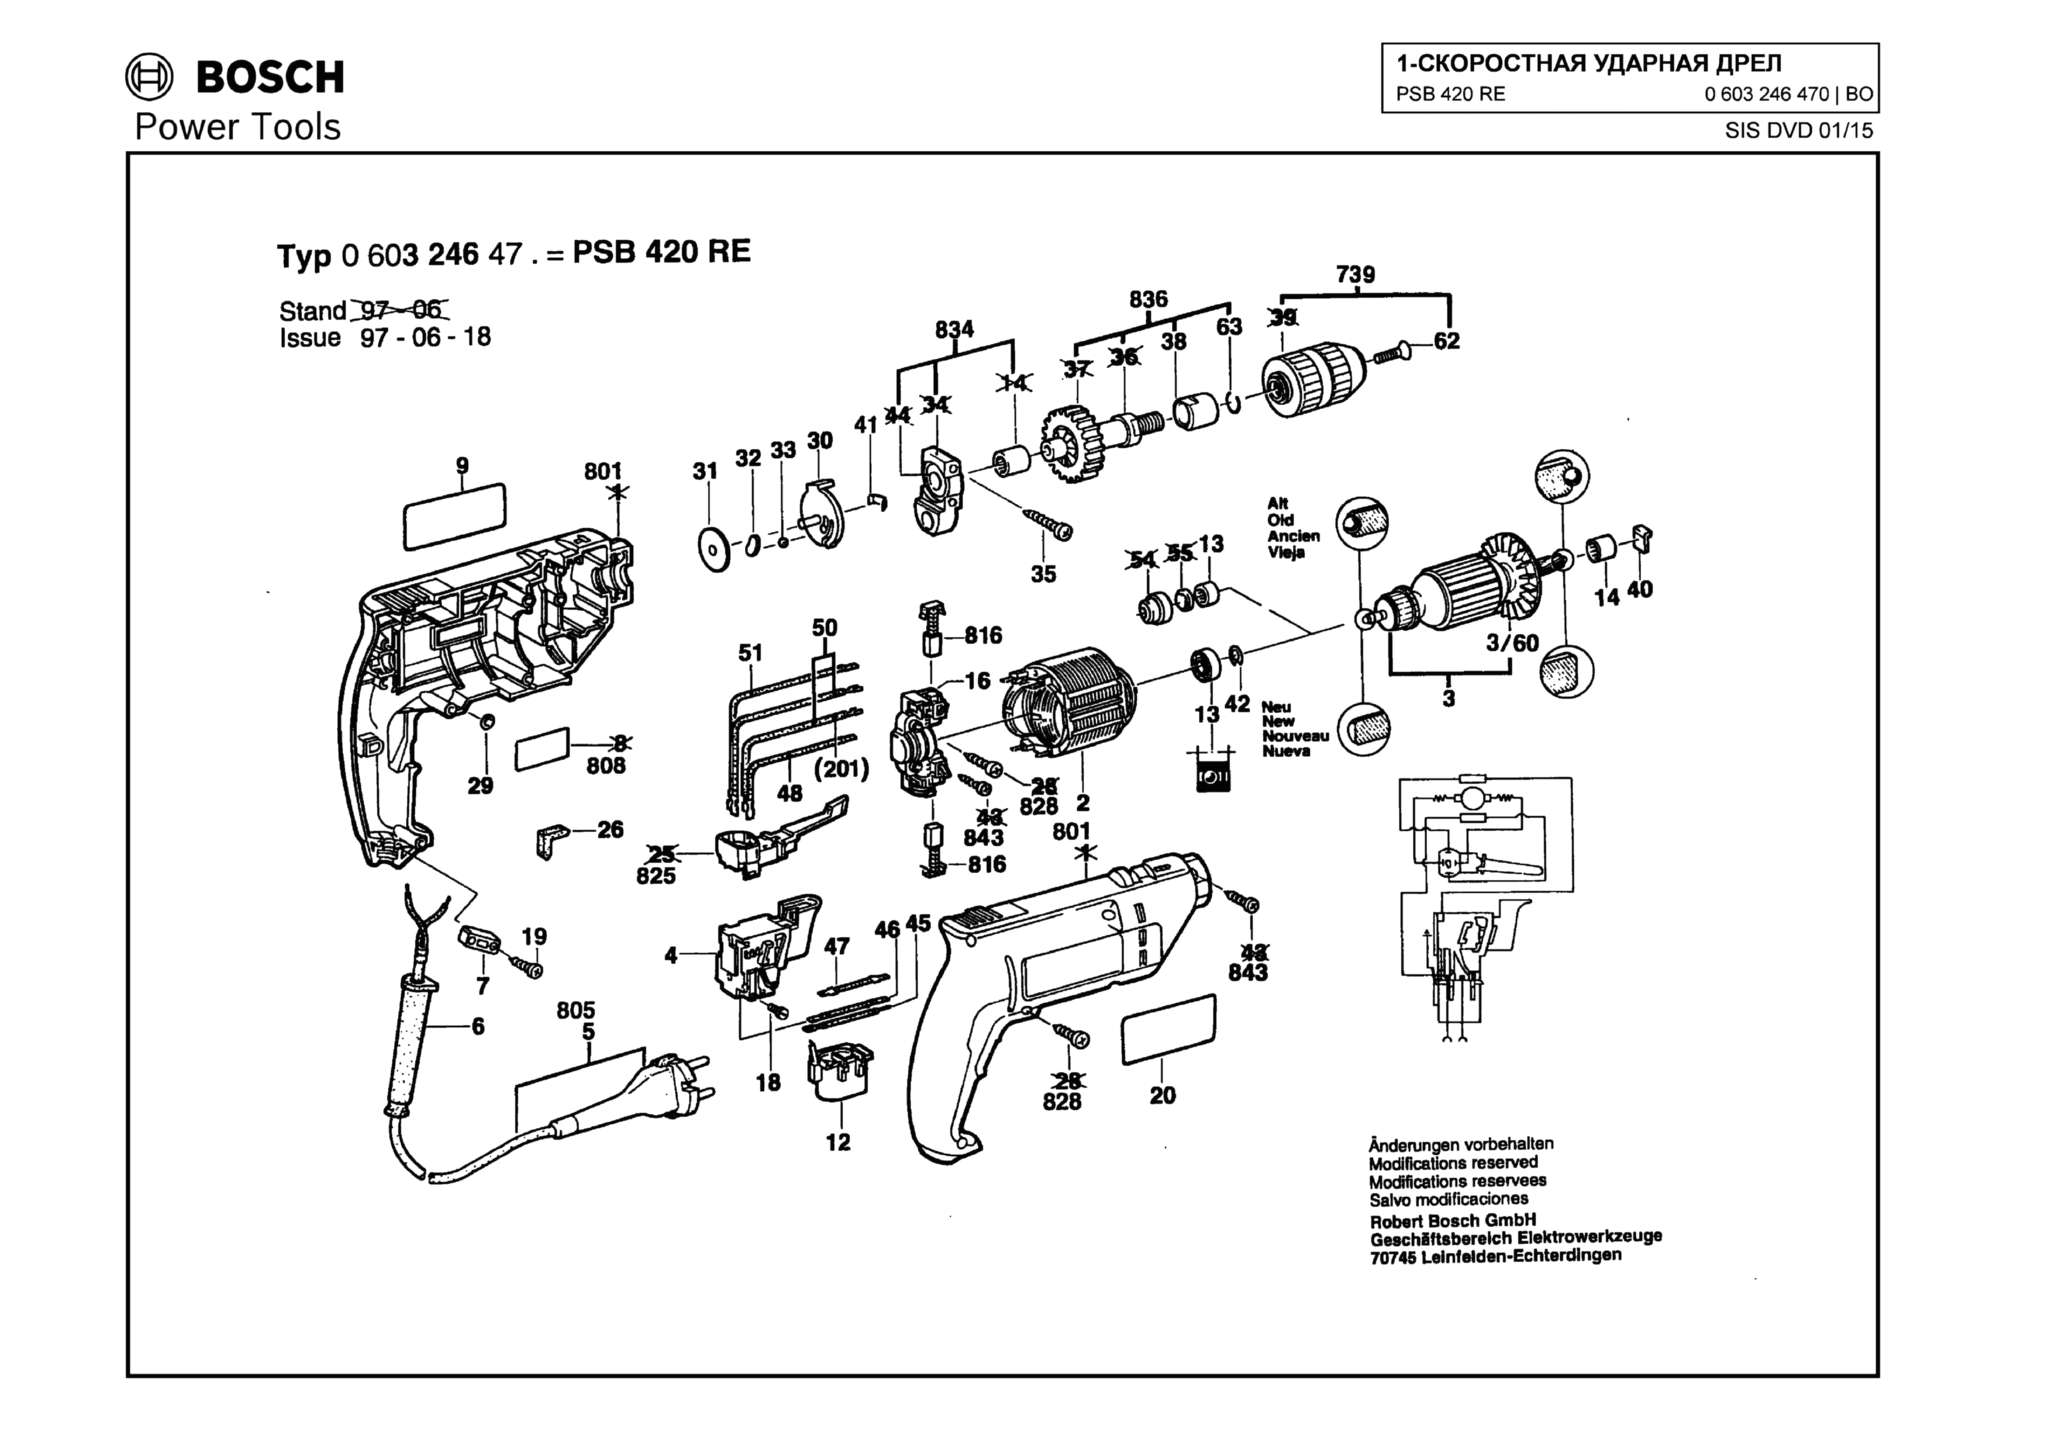 Запчасти, схема и деталировка Bosch PSB 420 RE (ТИП 0603246470)